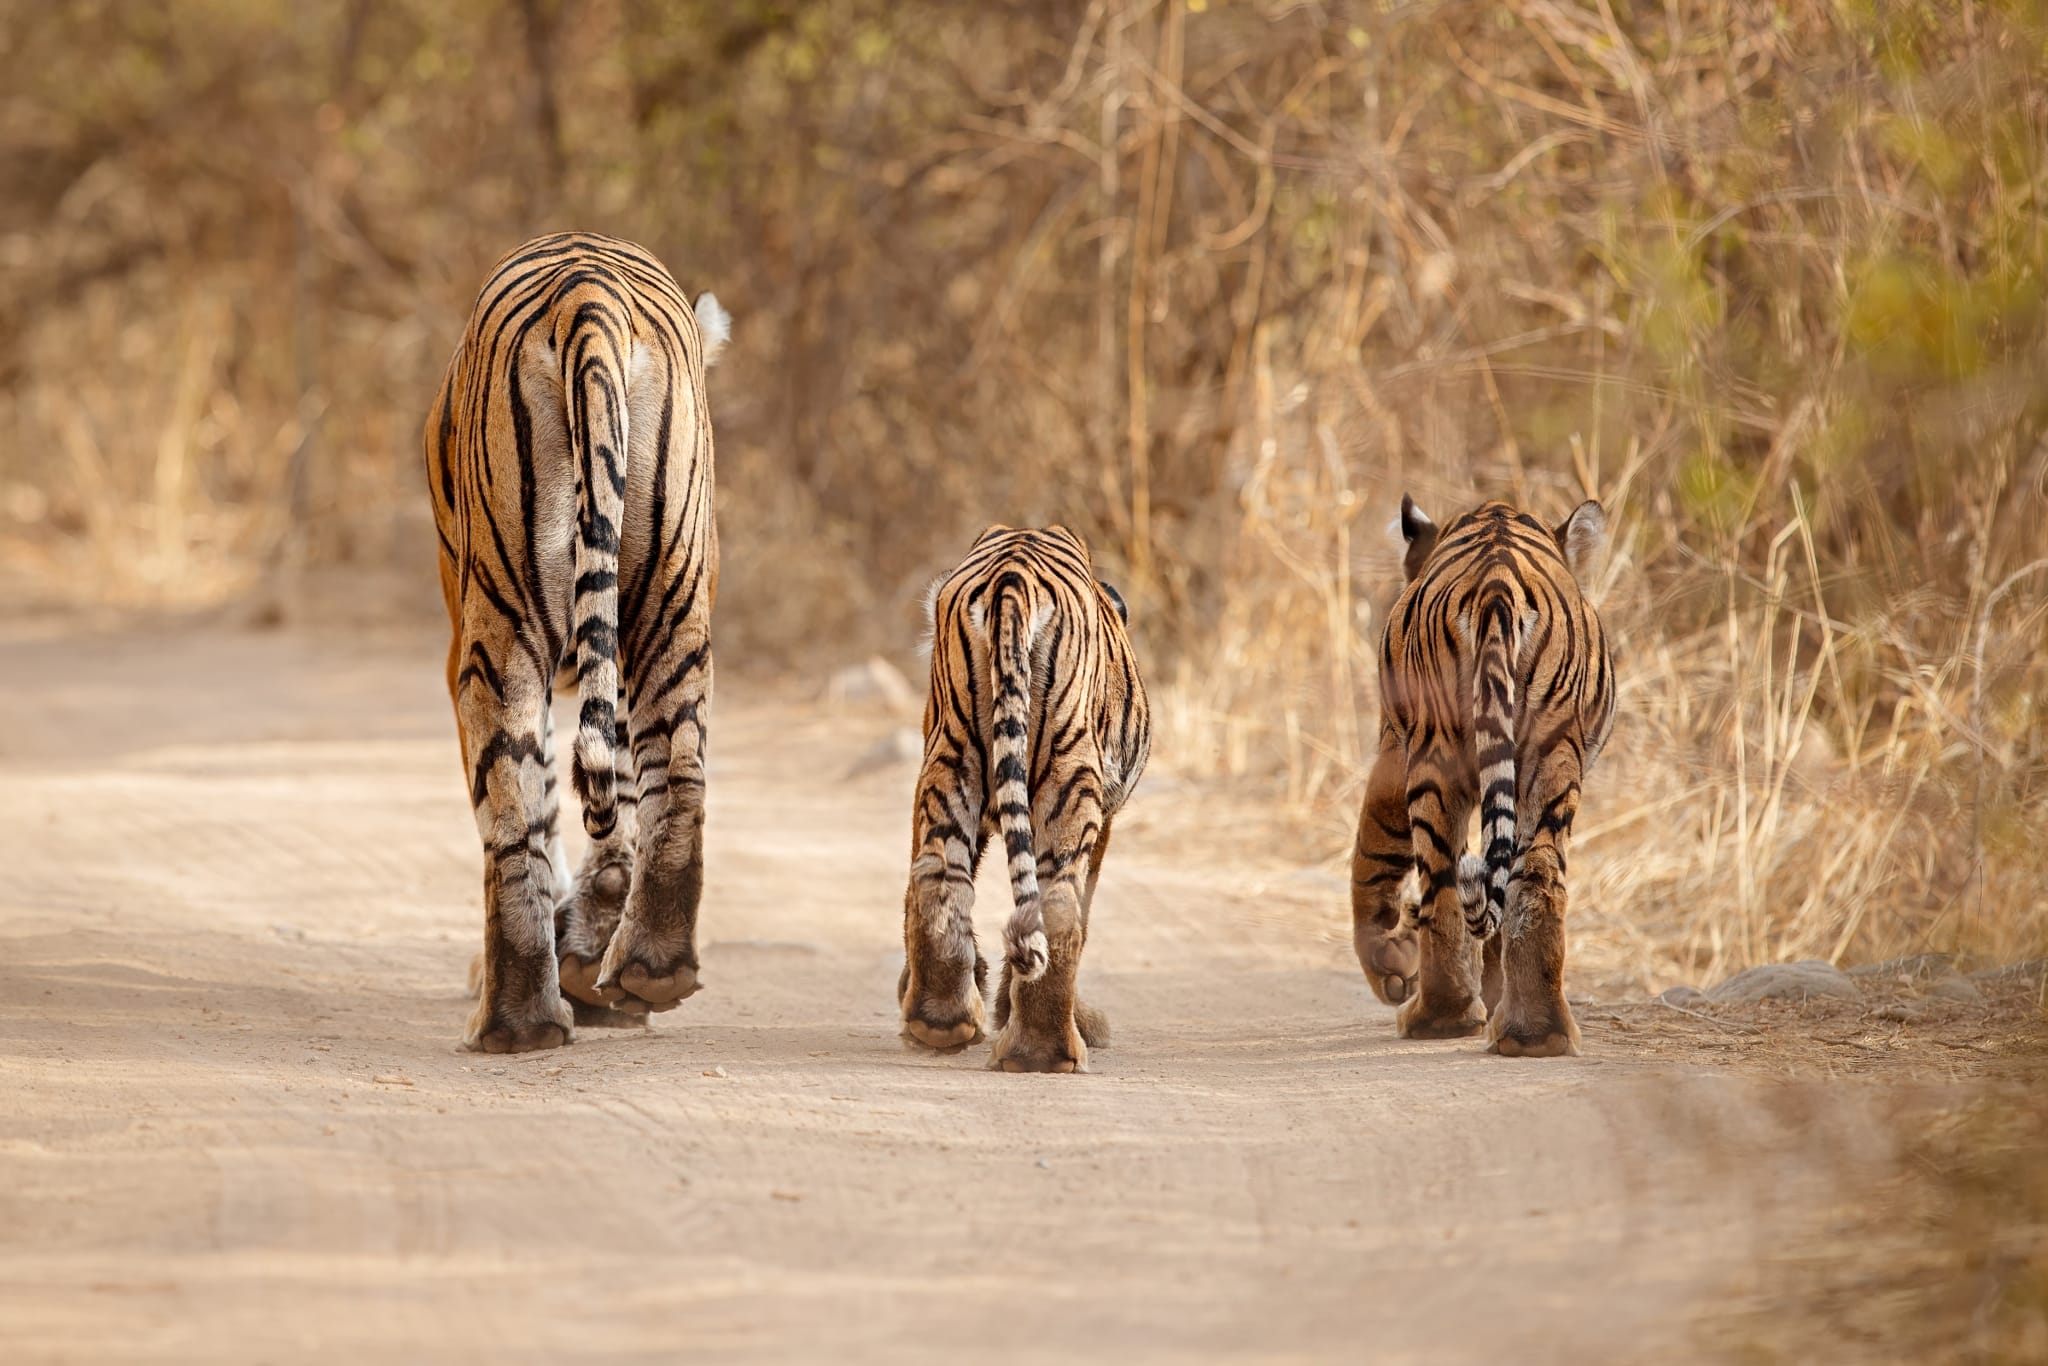 Tigers walking away